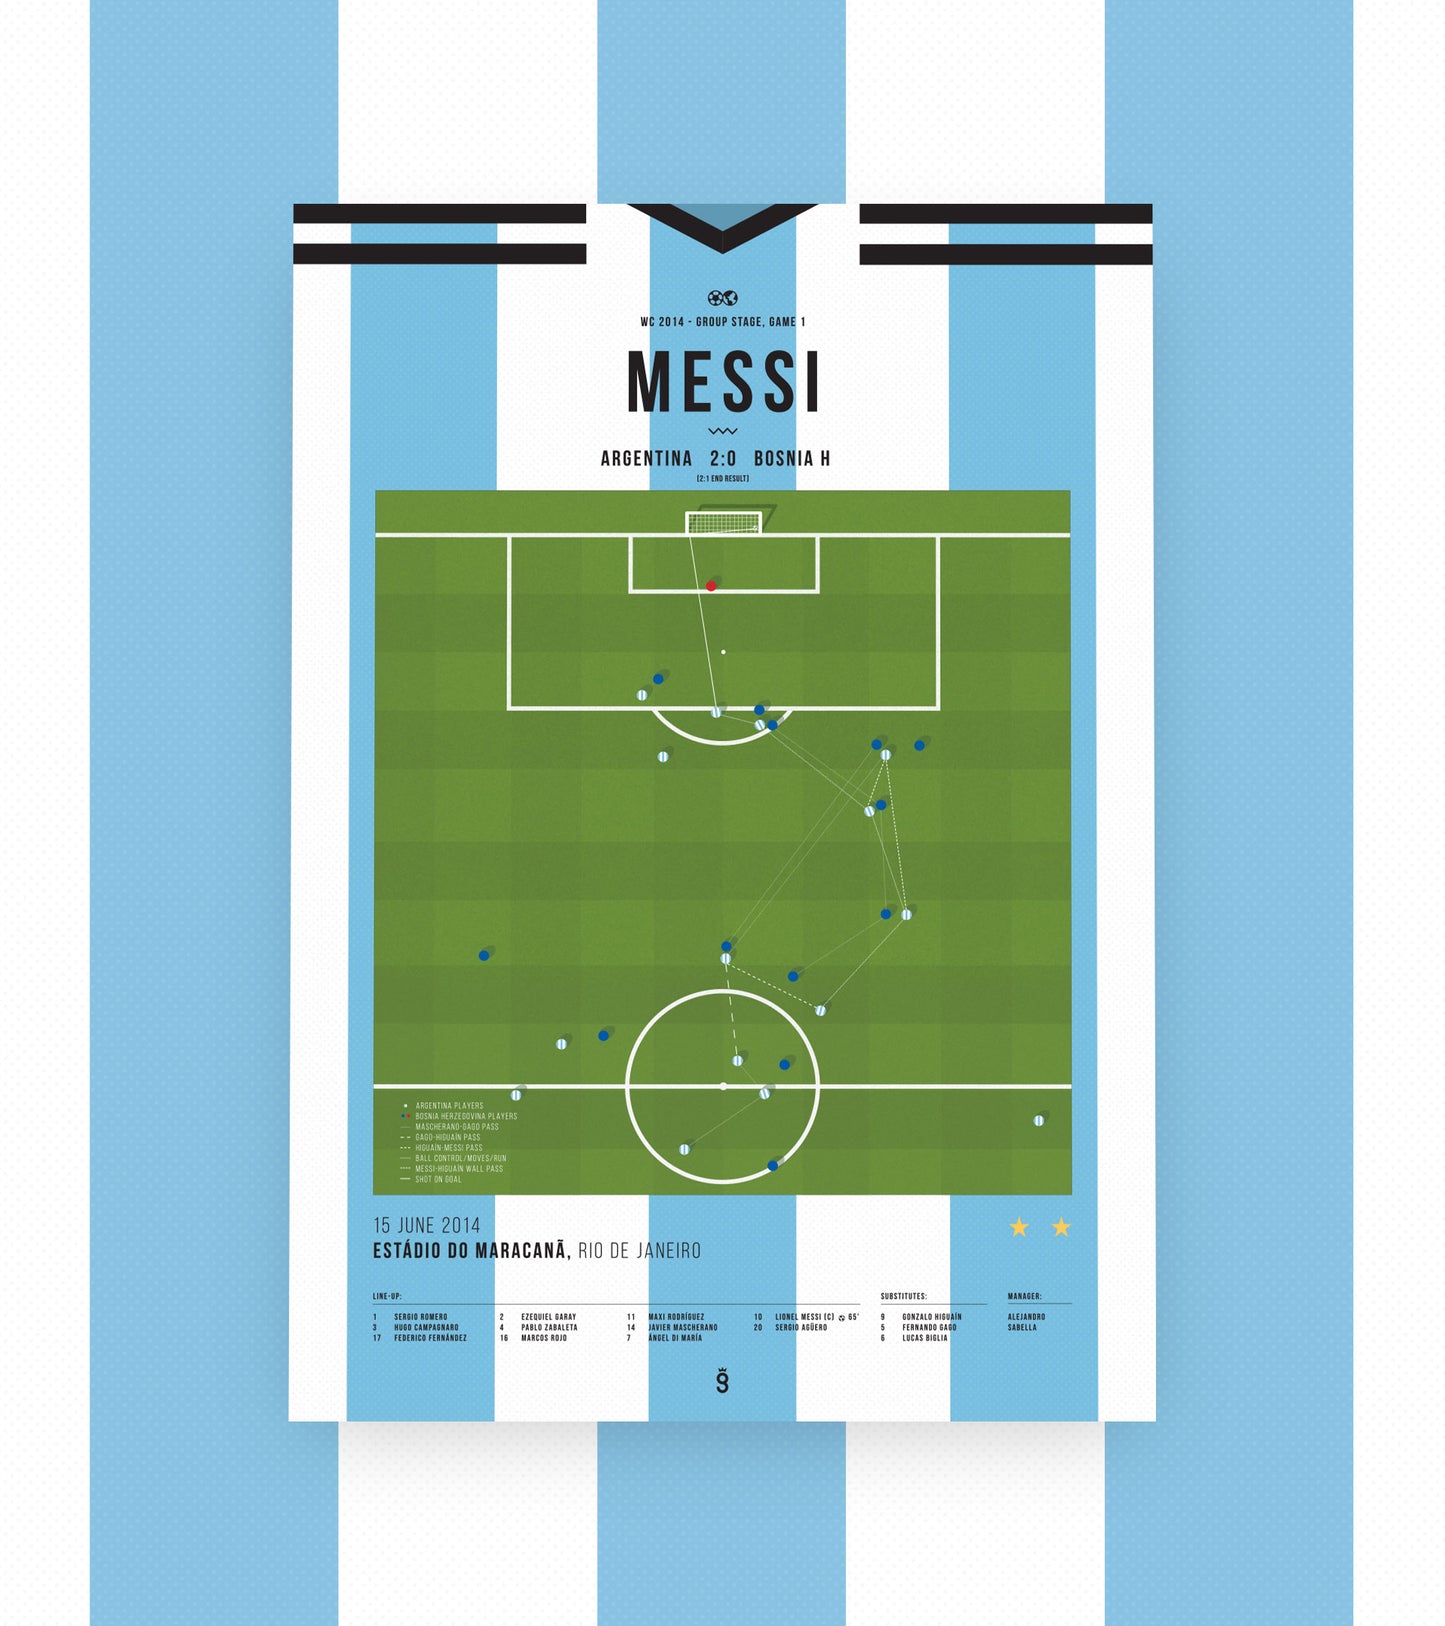 El Gol de Messi contra Bosnia